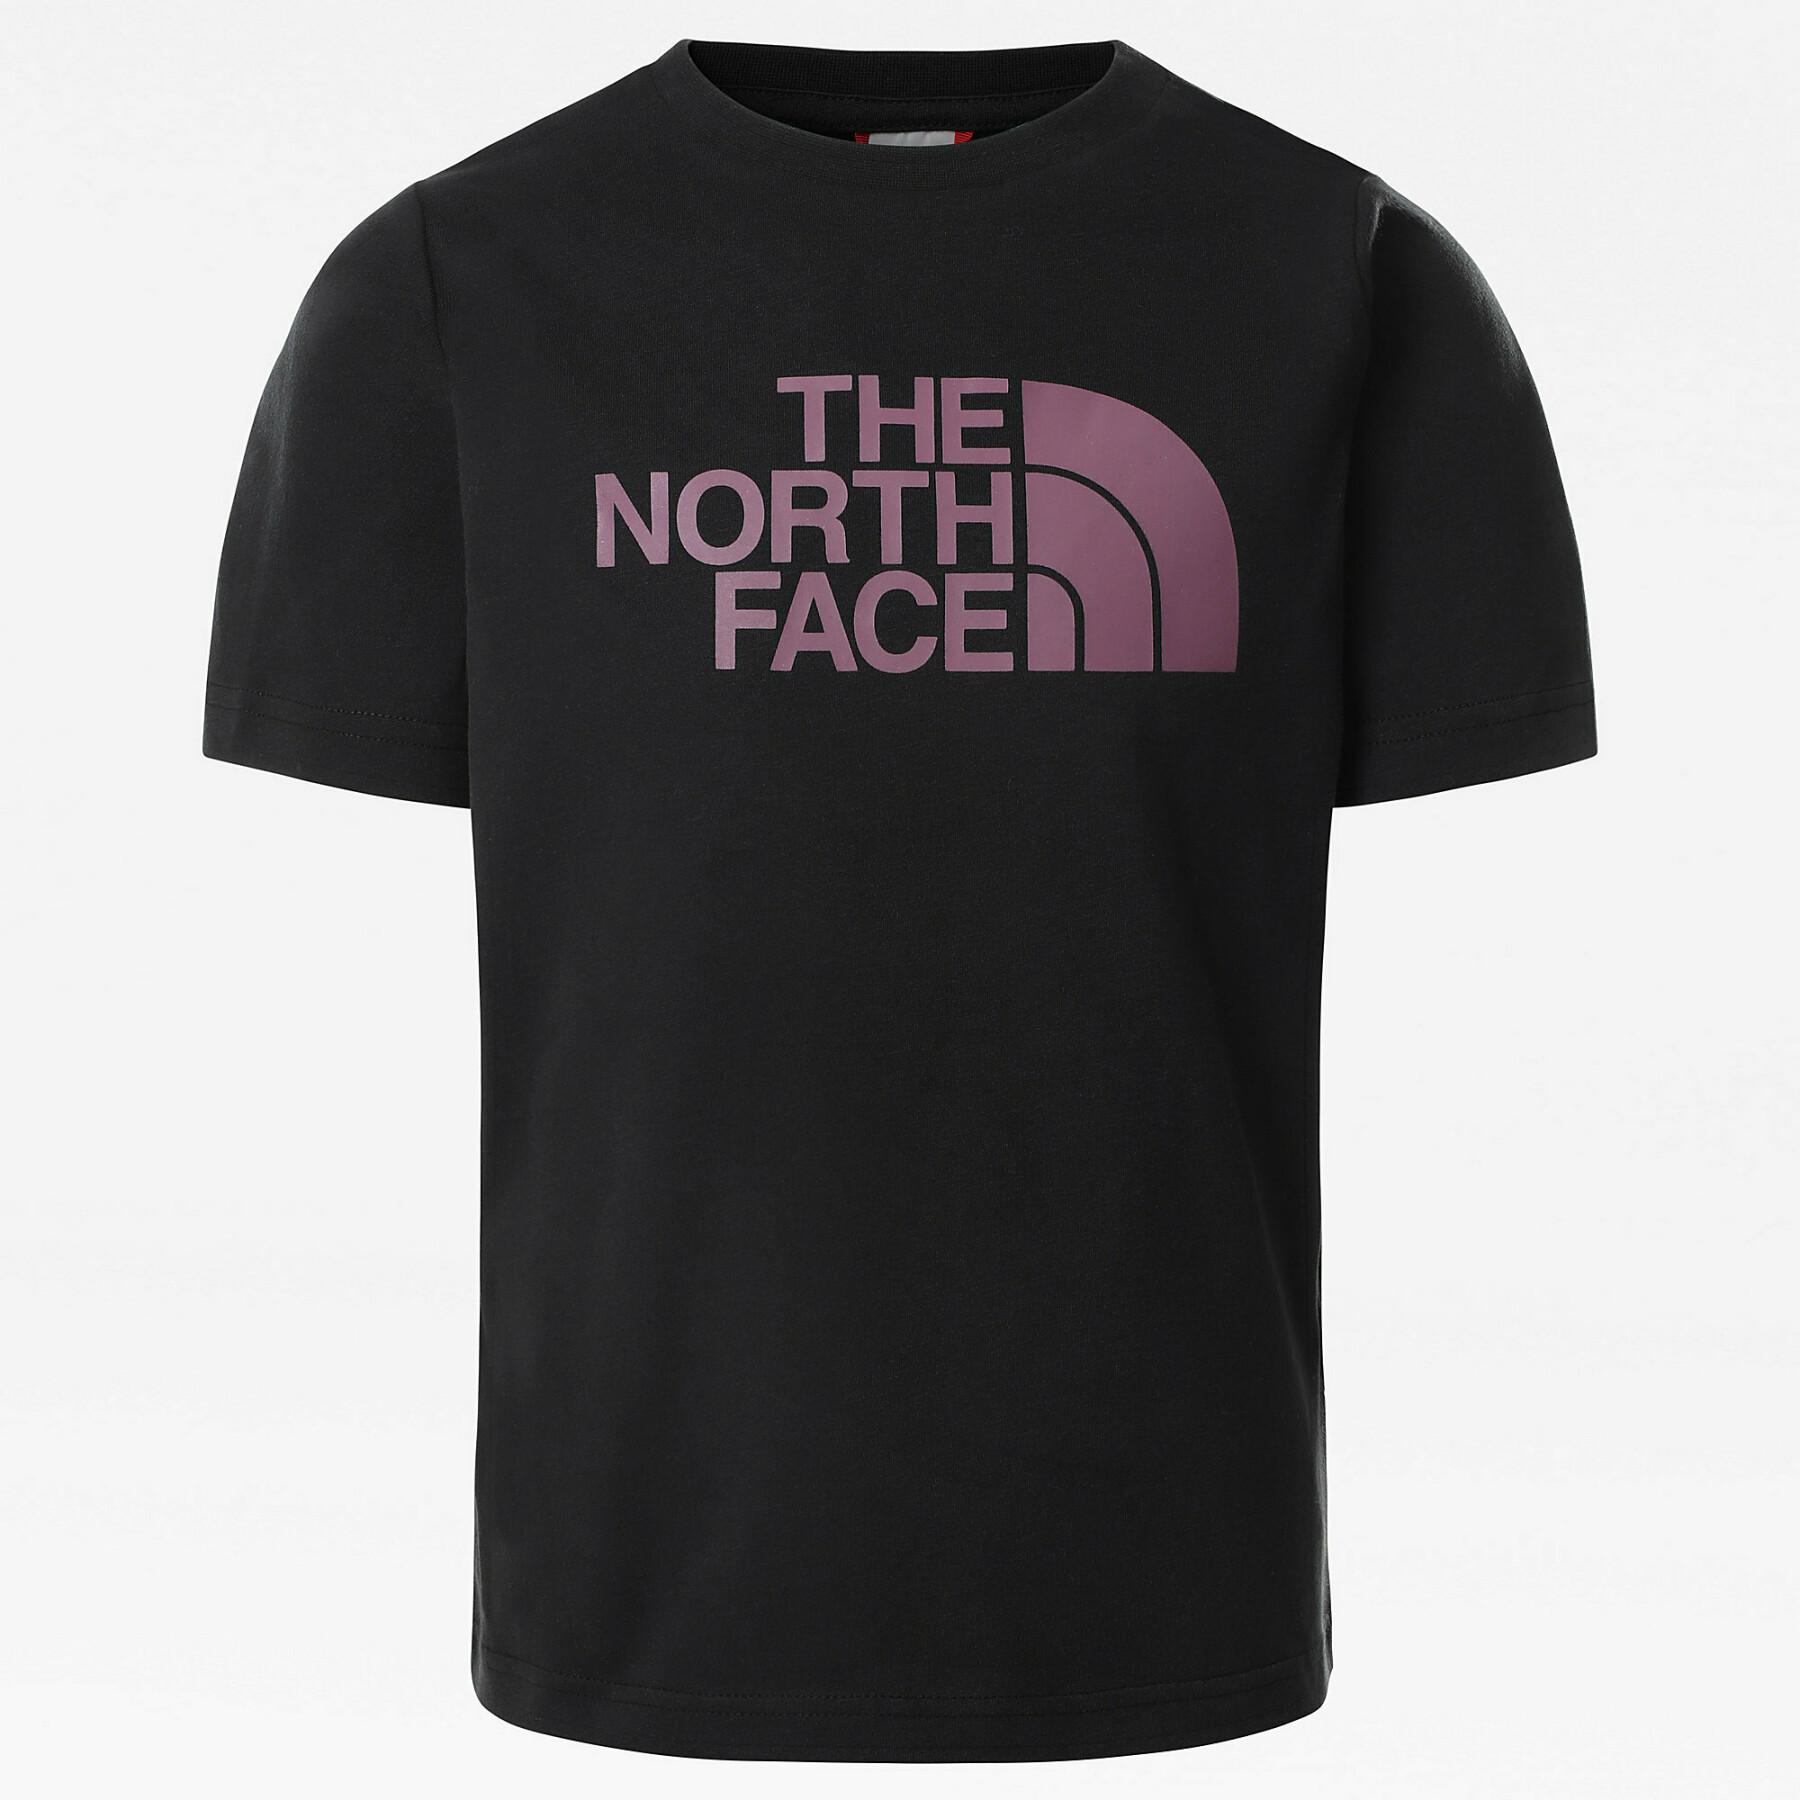 Maglietta da ragazza The North Face Easy